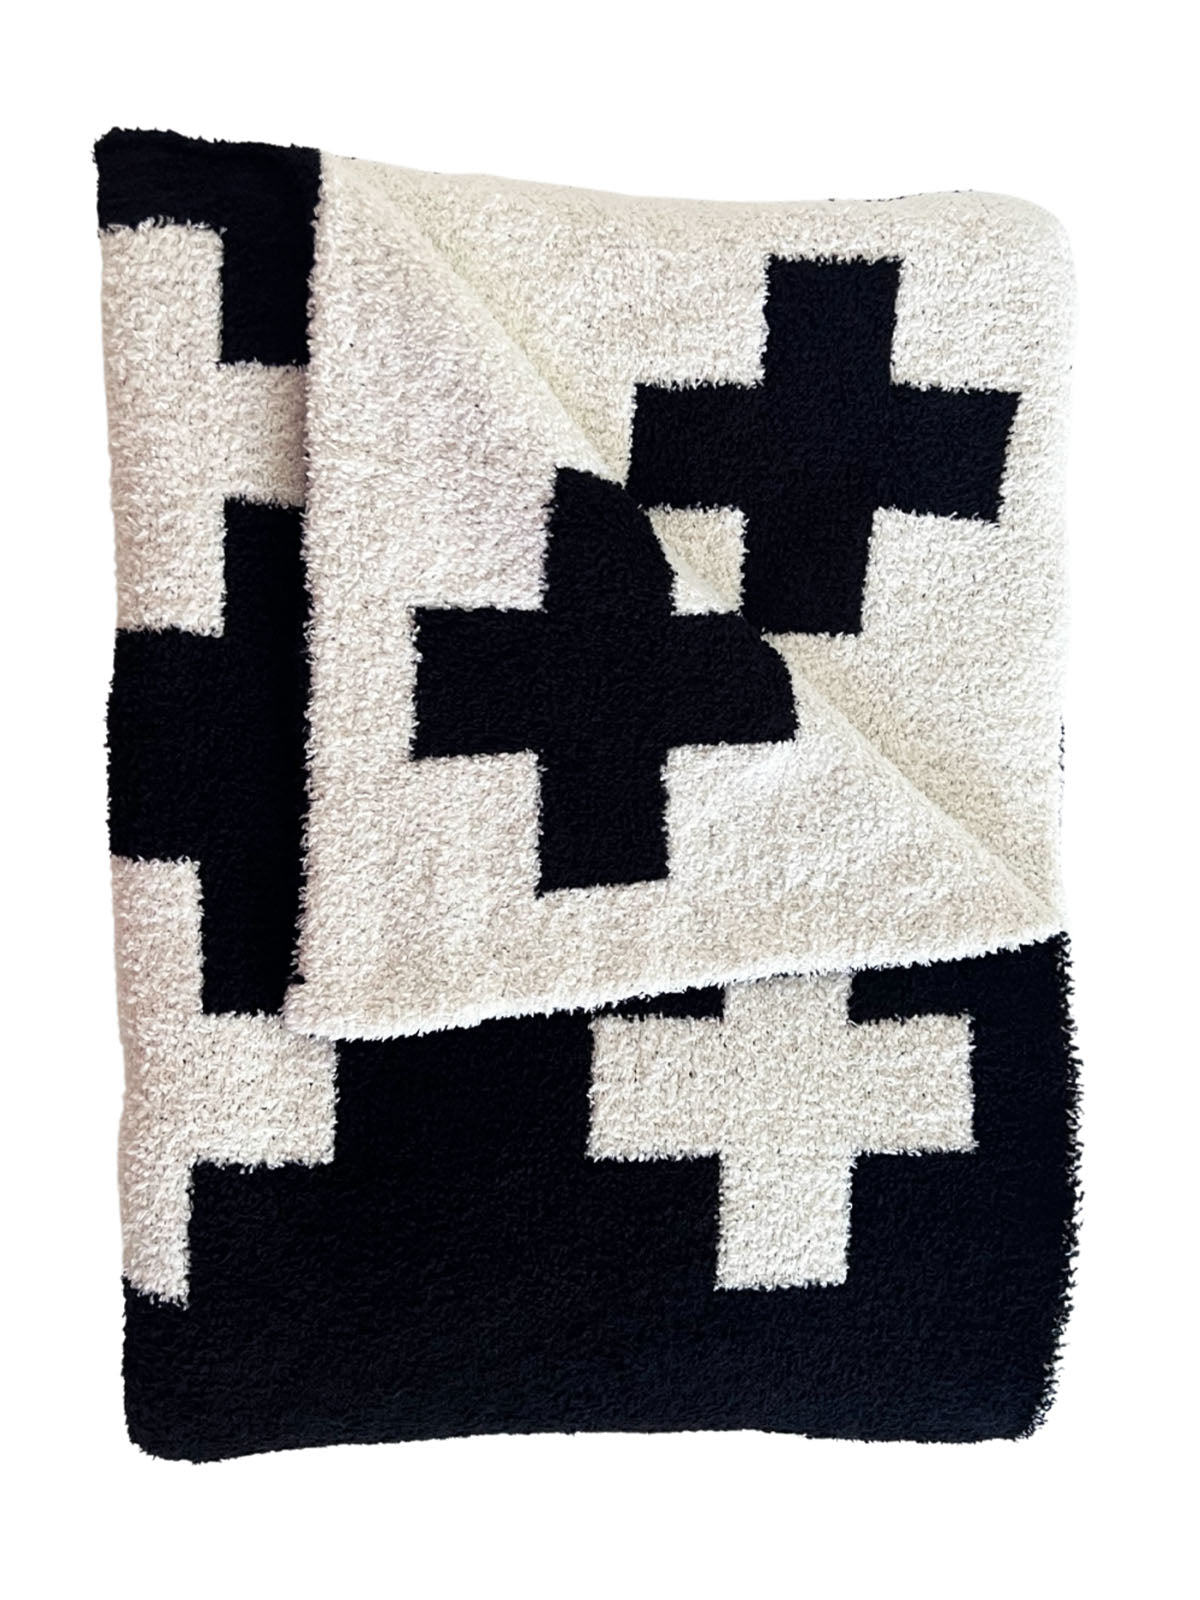 Phufy® Bliss Sofa Blanket, Black/White Cross